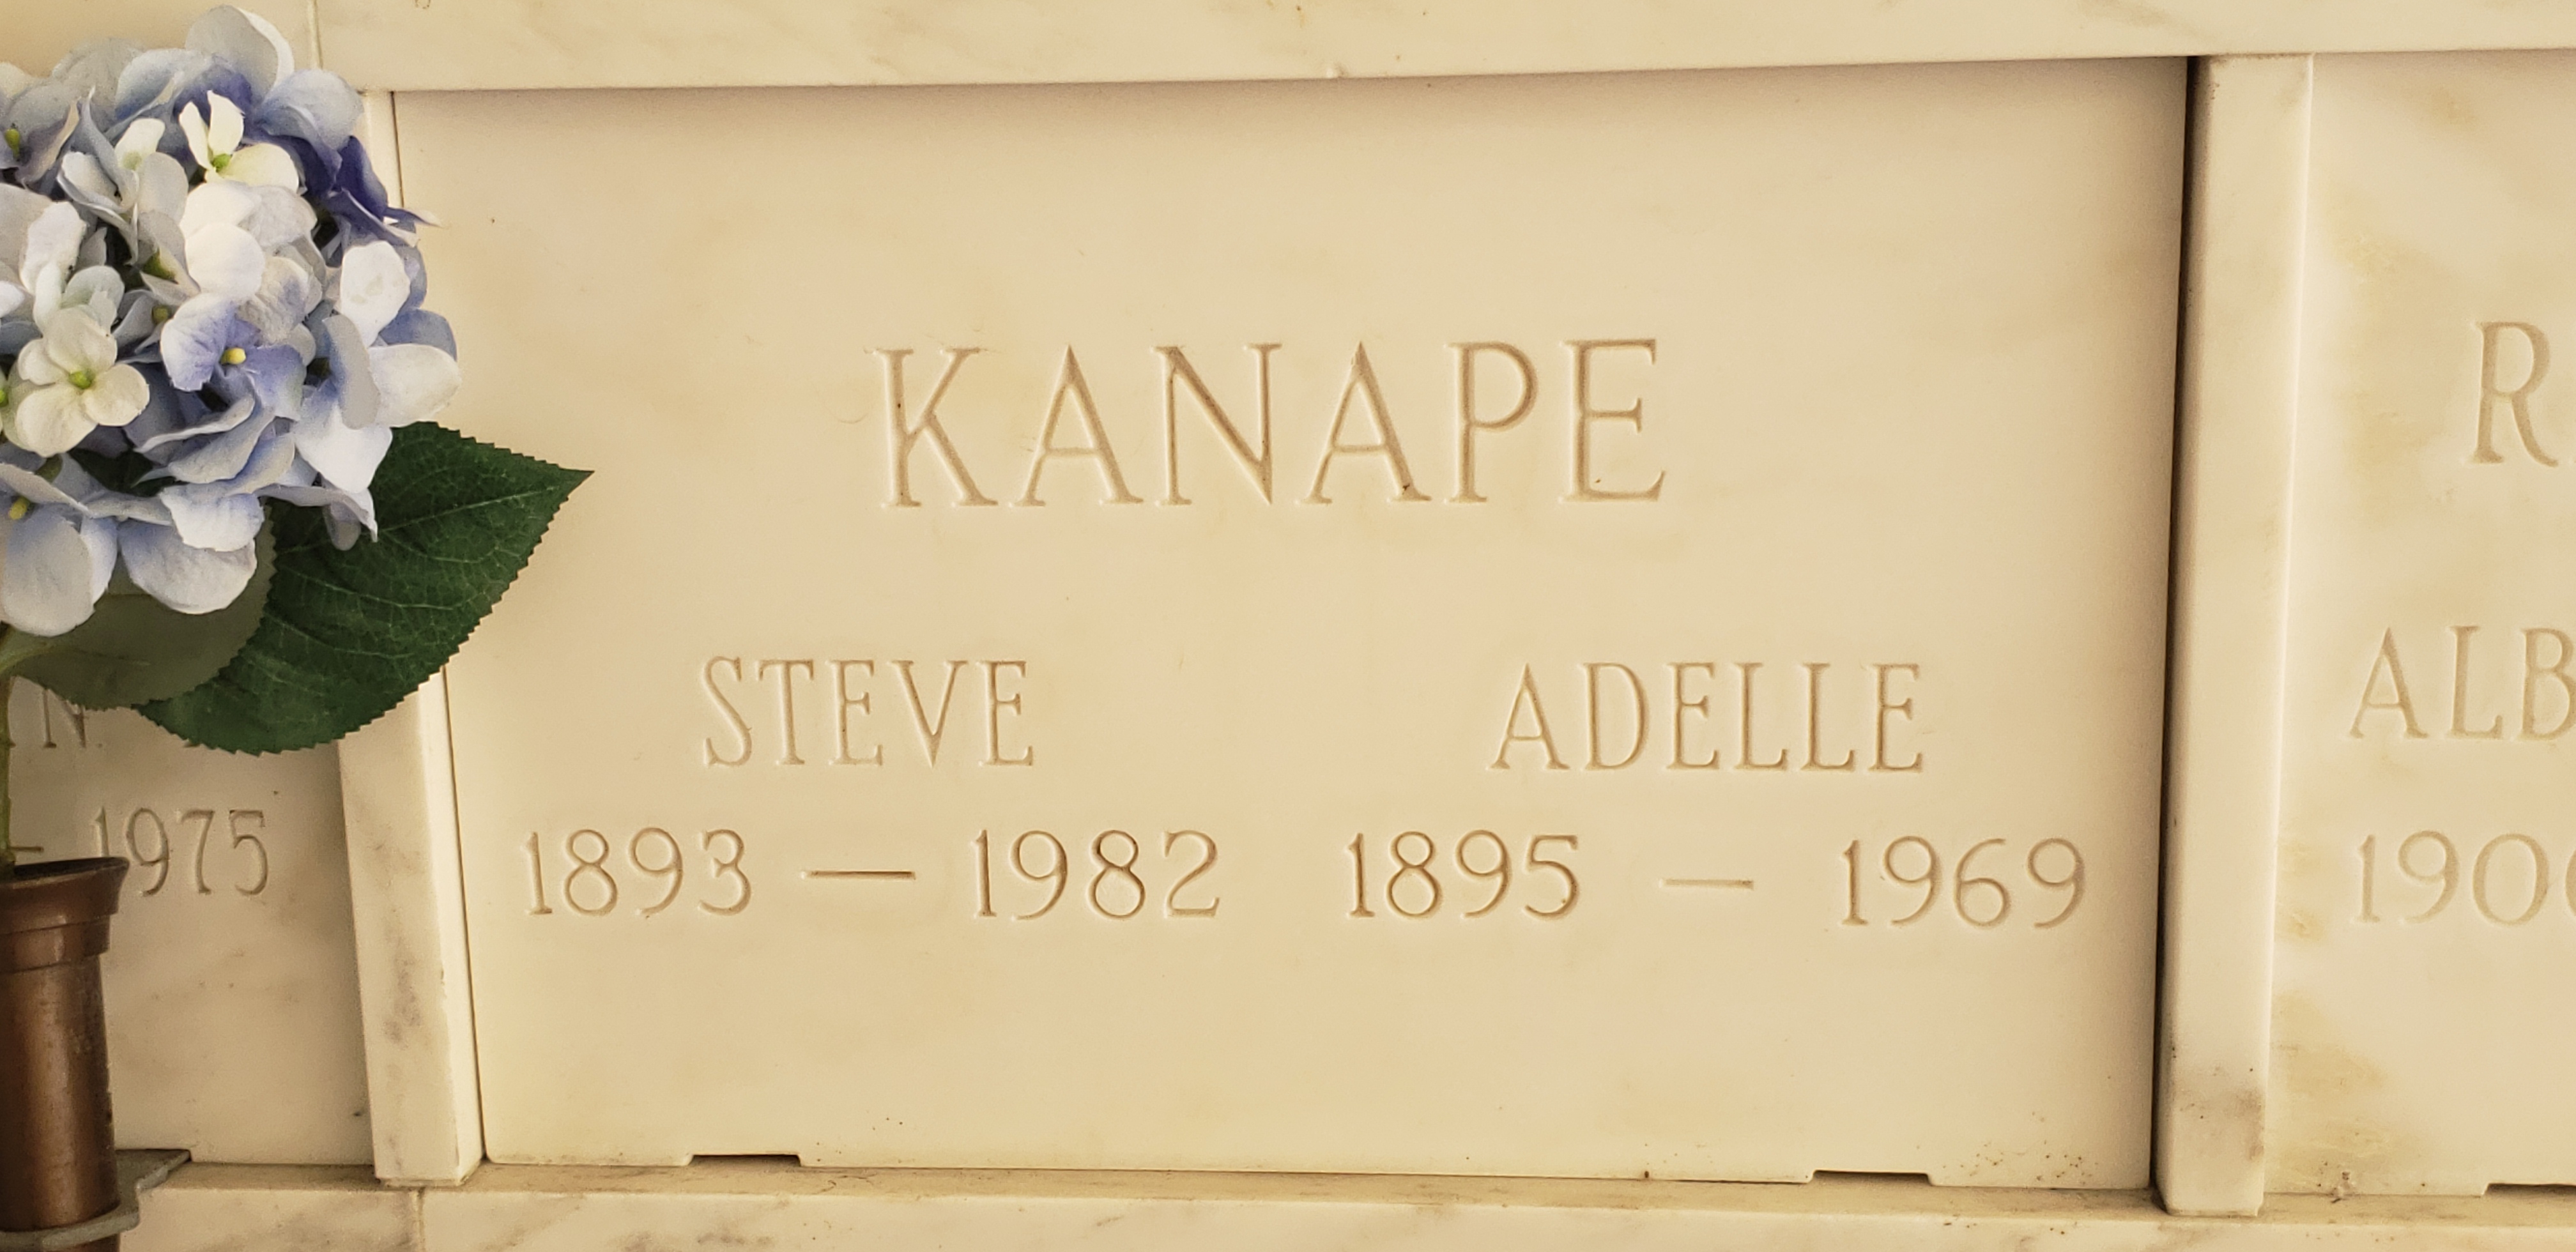 Steve Kanape